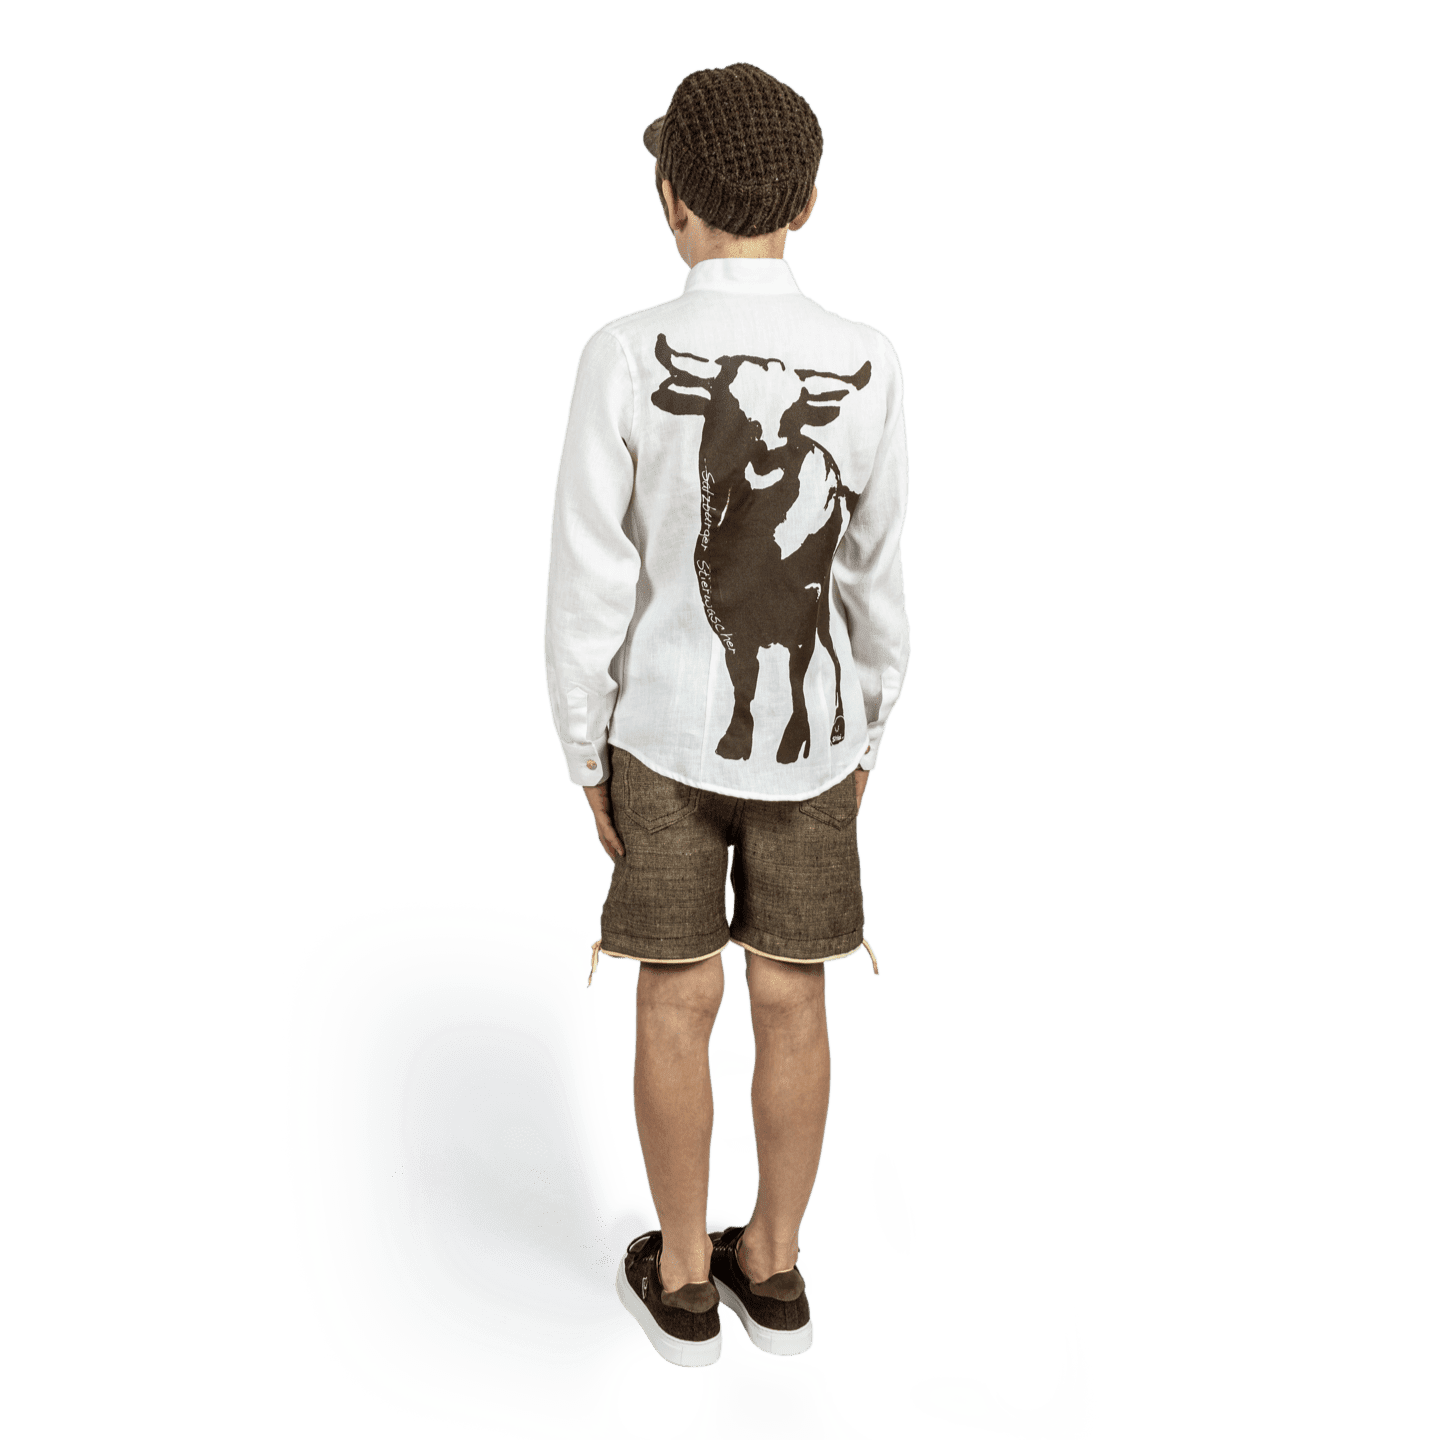 Strizi Schuhe Kinder Leinenhemd 3 - Strizi Children‘s linen shirt „Salzburg Bull“